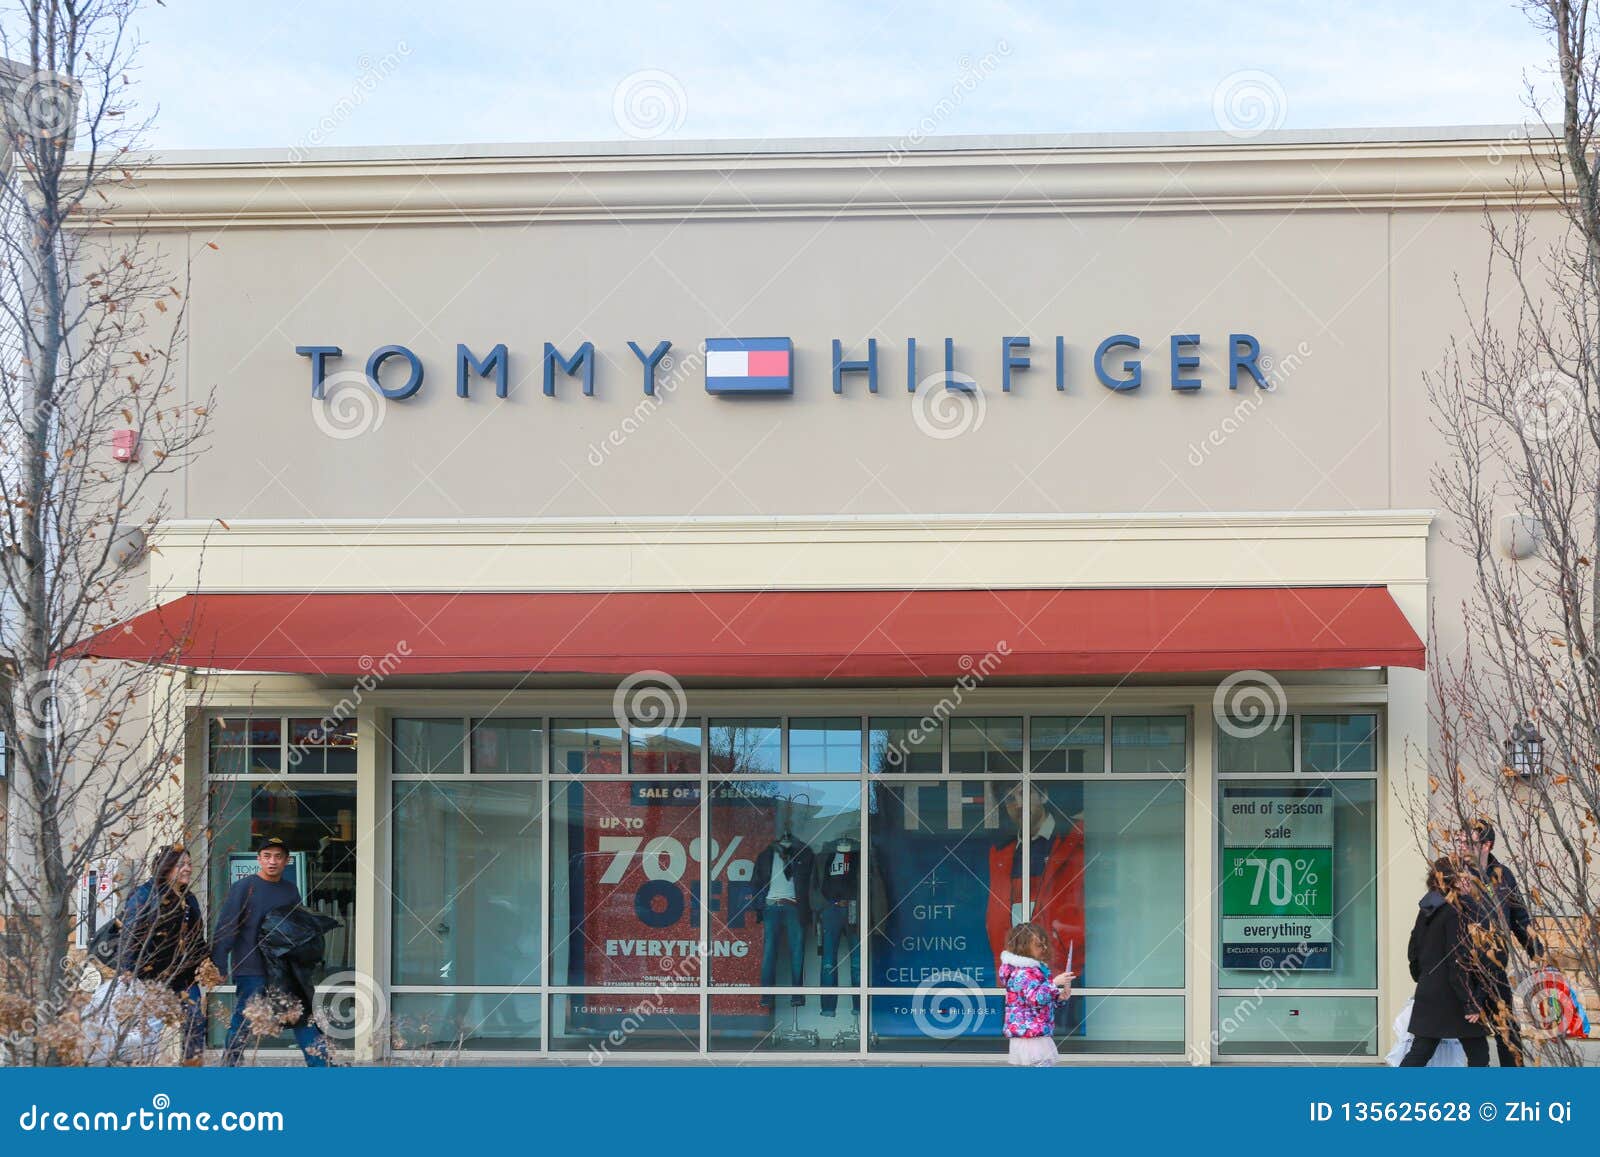 tommy hilfiger manufacturer